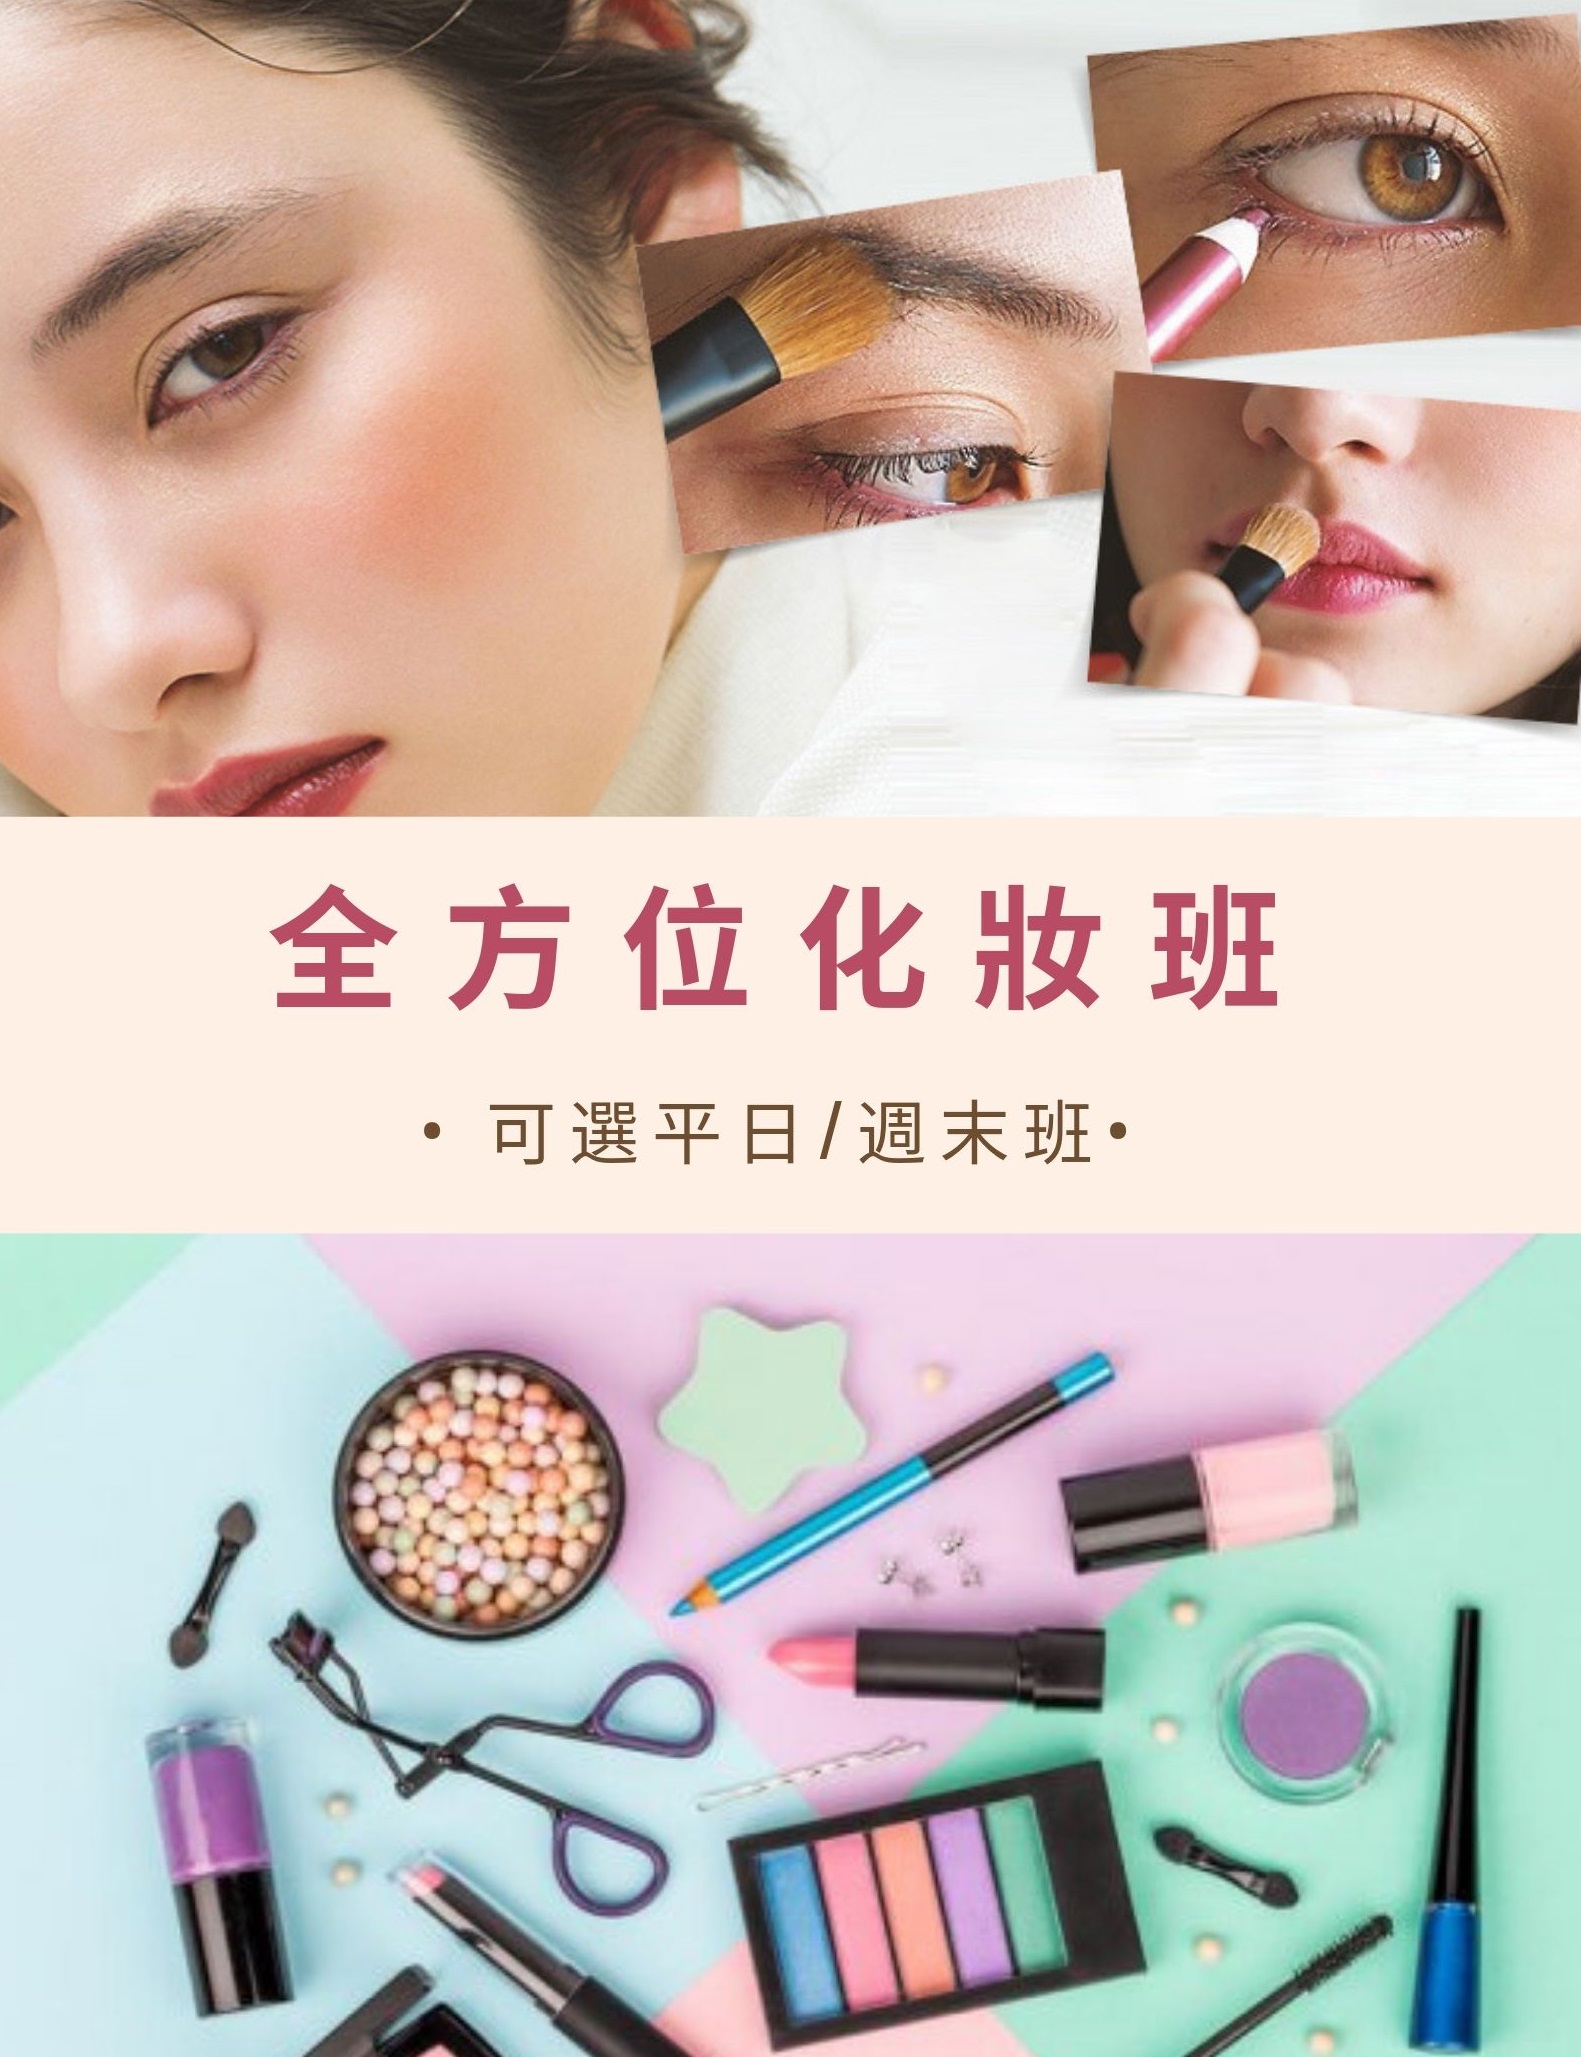 澳門教育進修平台 Macao Education Platform: 全方位化妝造型班